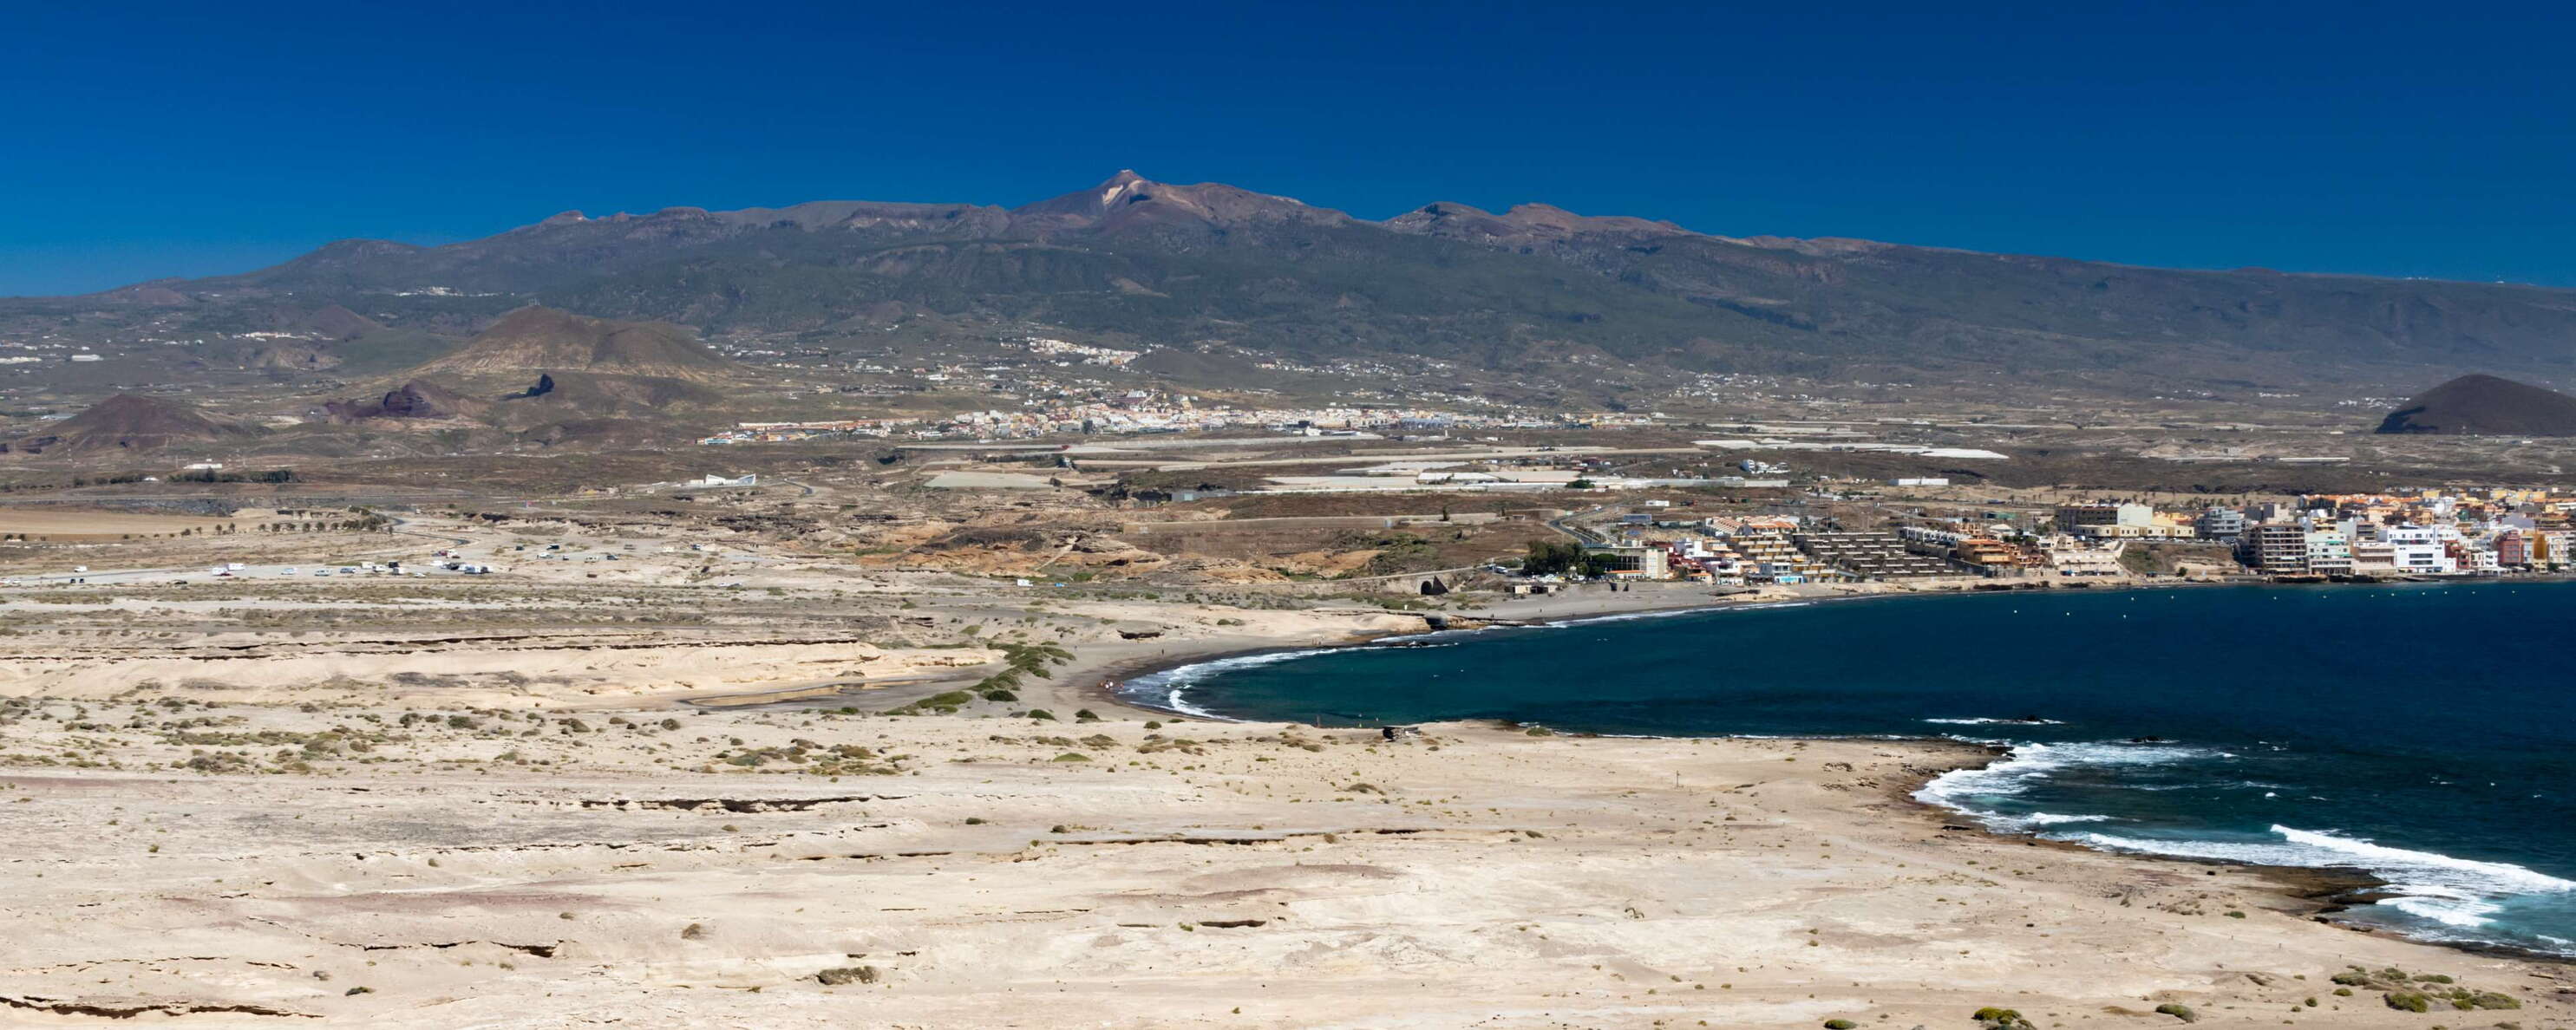 El Médano and Pico del Teide